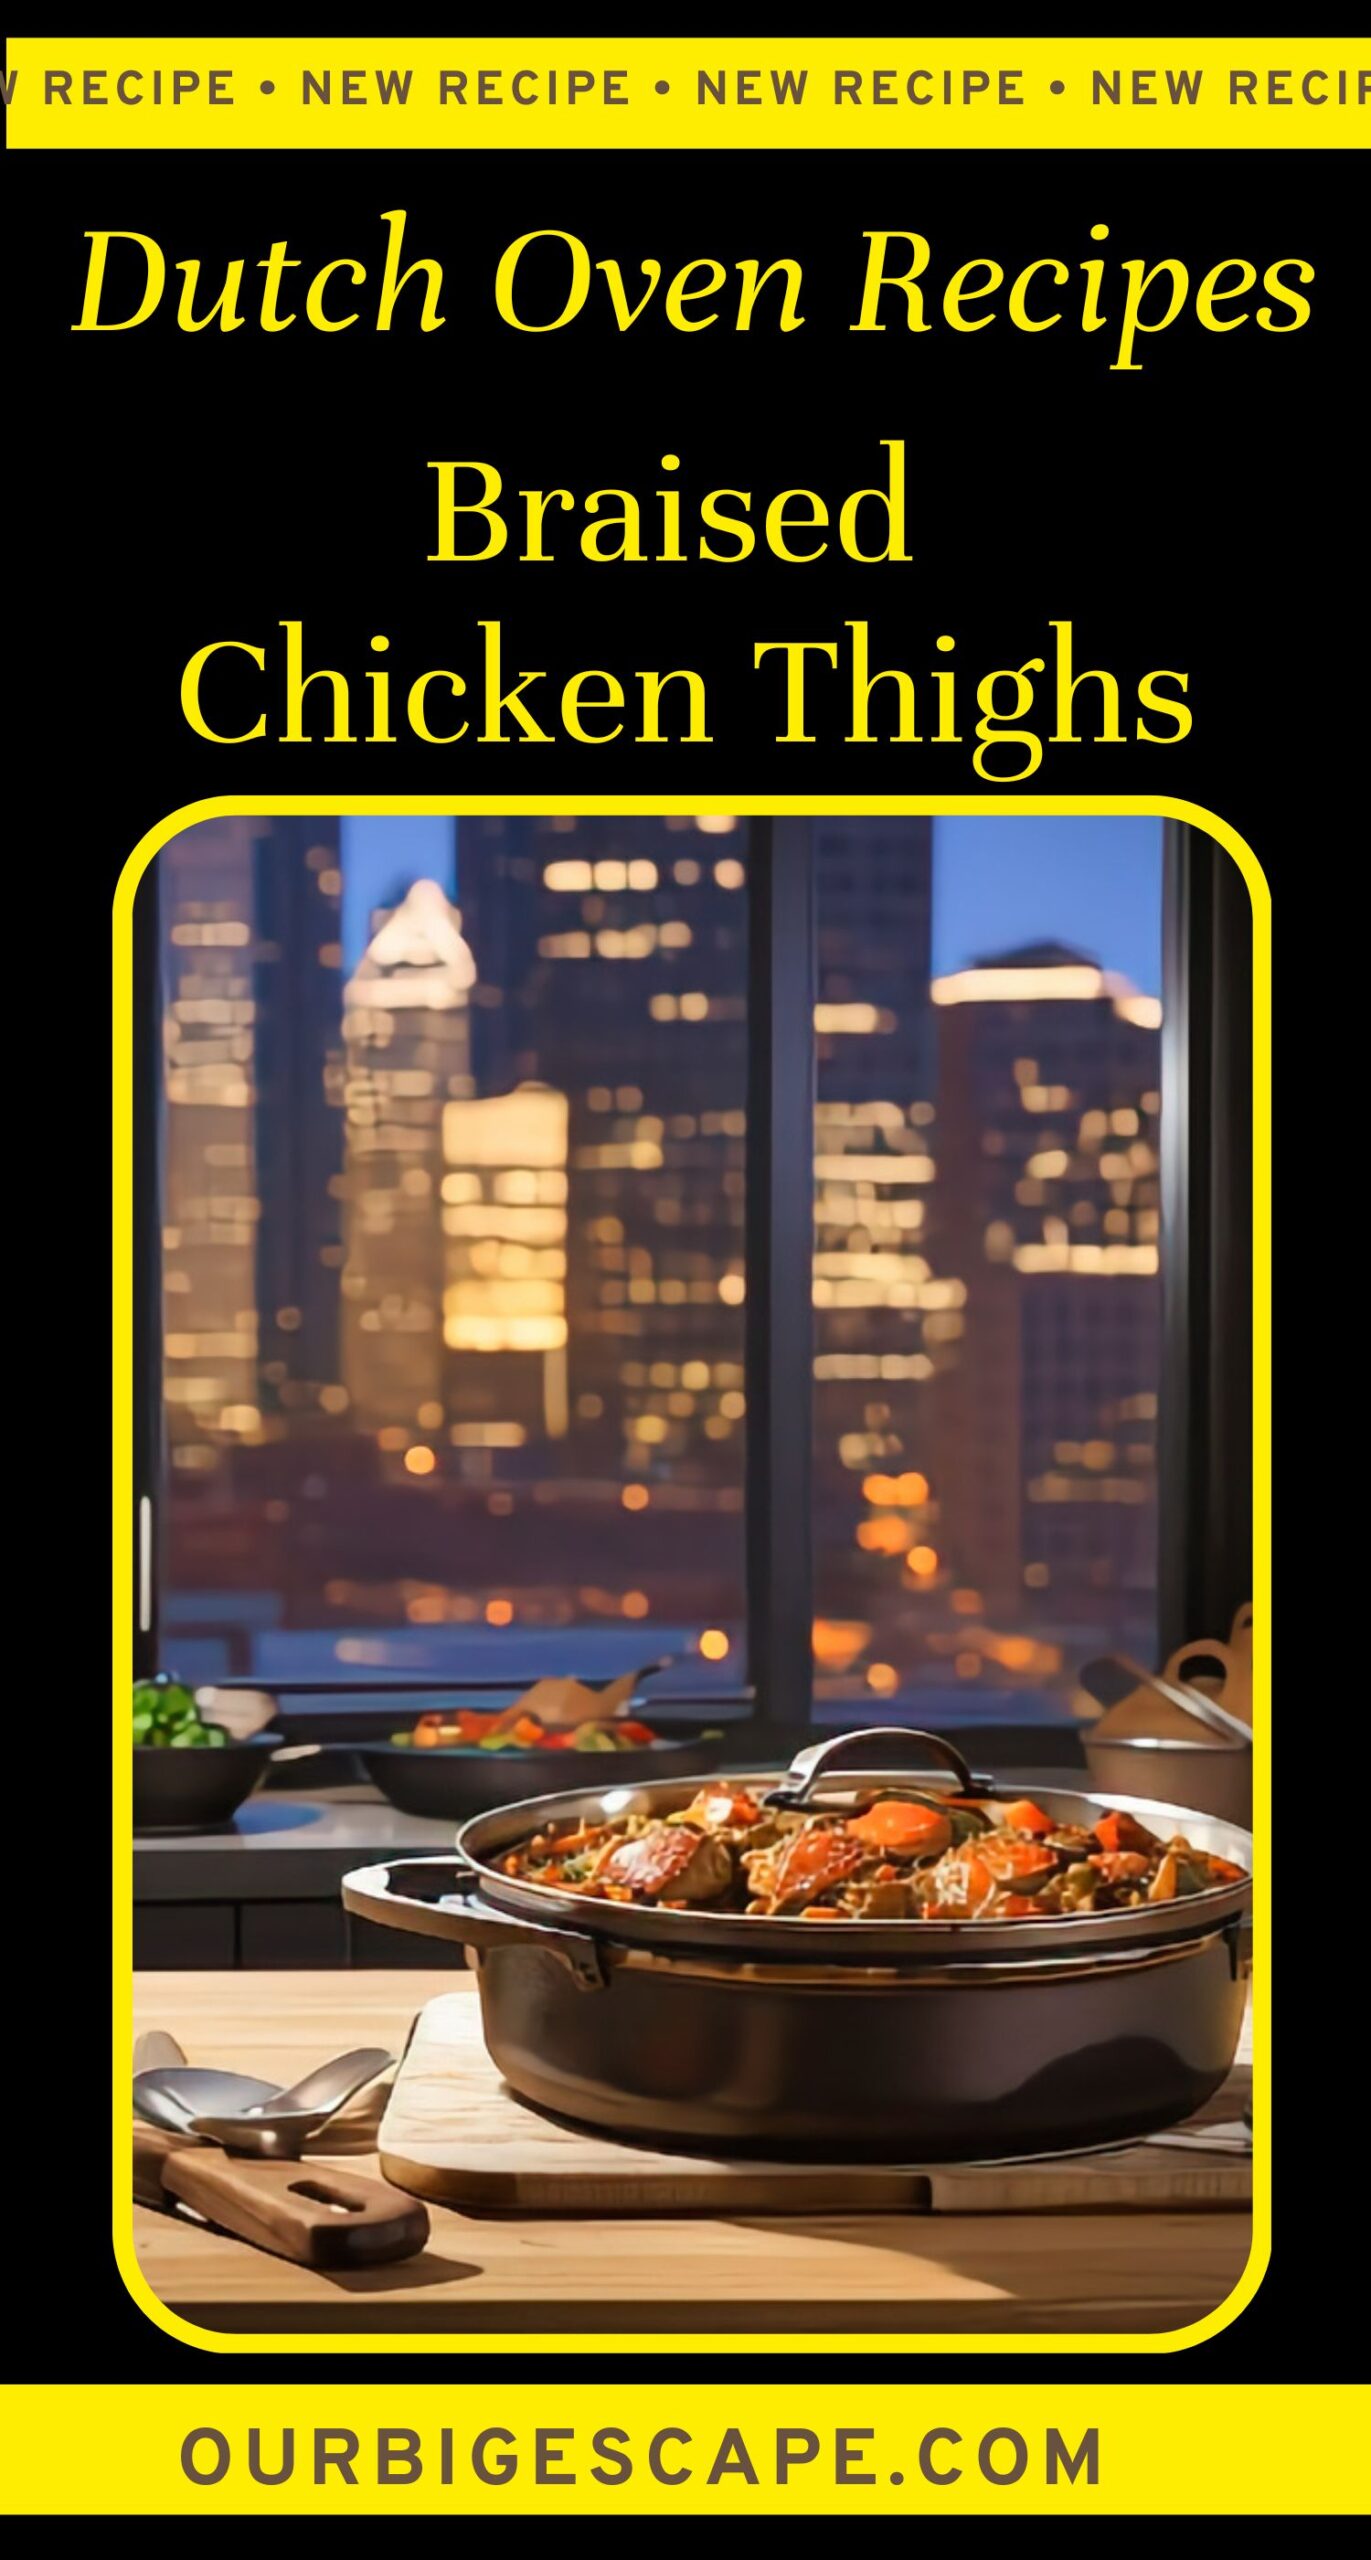 2. Dutch Oven Braised Chicken Thighs Recipe